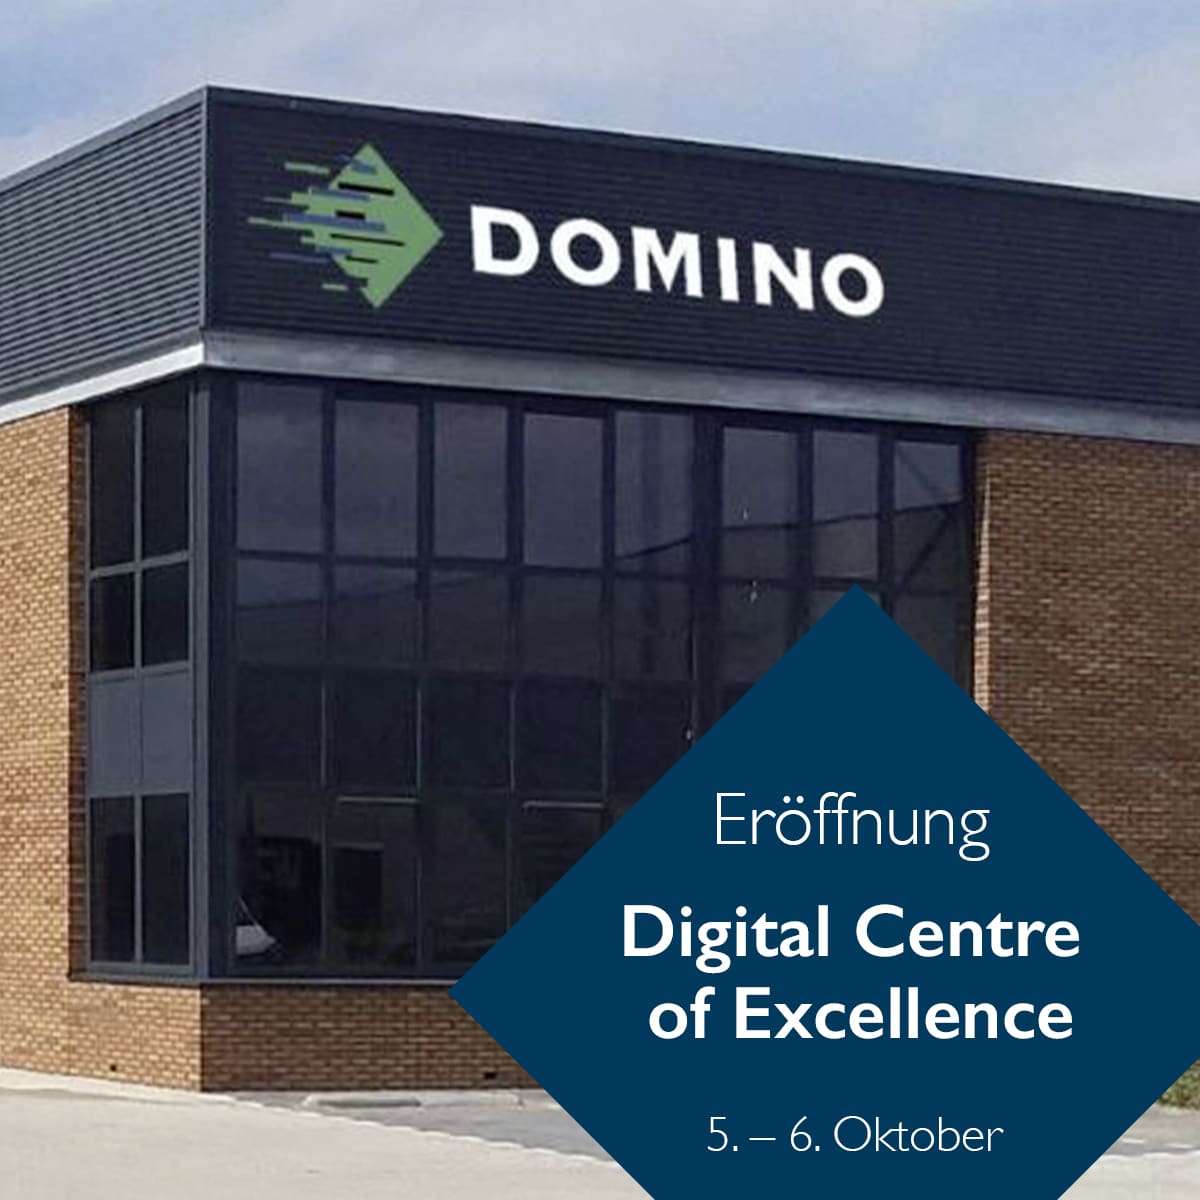 Mit dem „Centre of Excellence“ erweitert Domino die Kundenkommunikation und kann aktuellste Technologie präsentieren (Quelle: Domino)